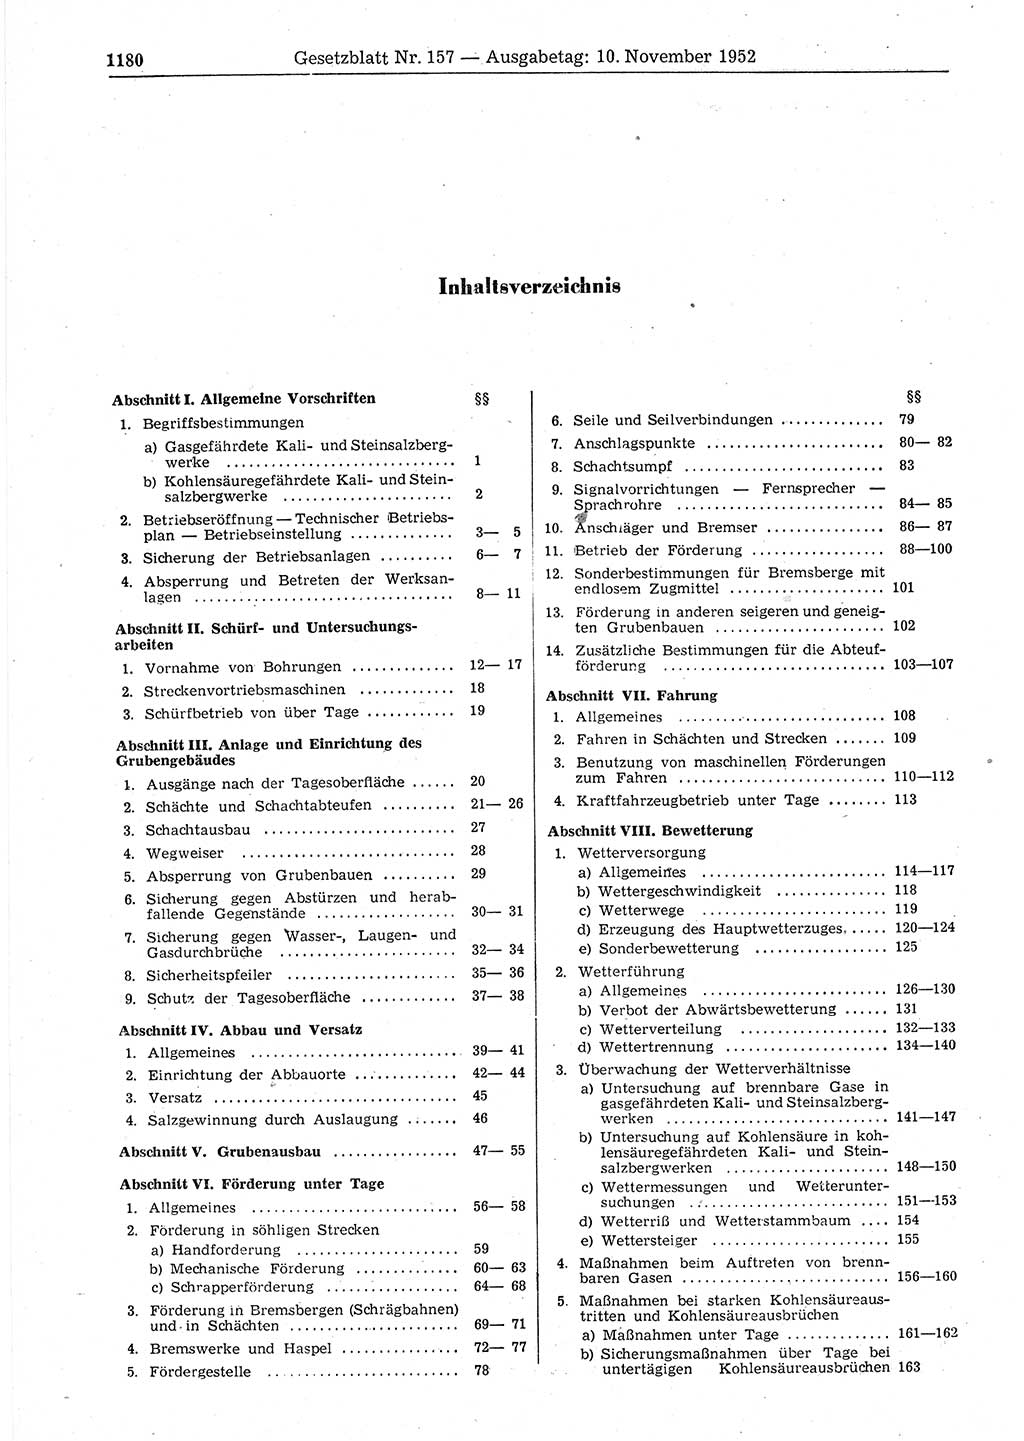 Gesetzblatt (GBl.) der Deutschen Demokratischen Republik (DDR) 1952, Seite 1180 (GBl. DDR 1952, S. 1180)